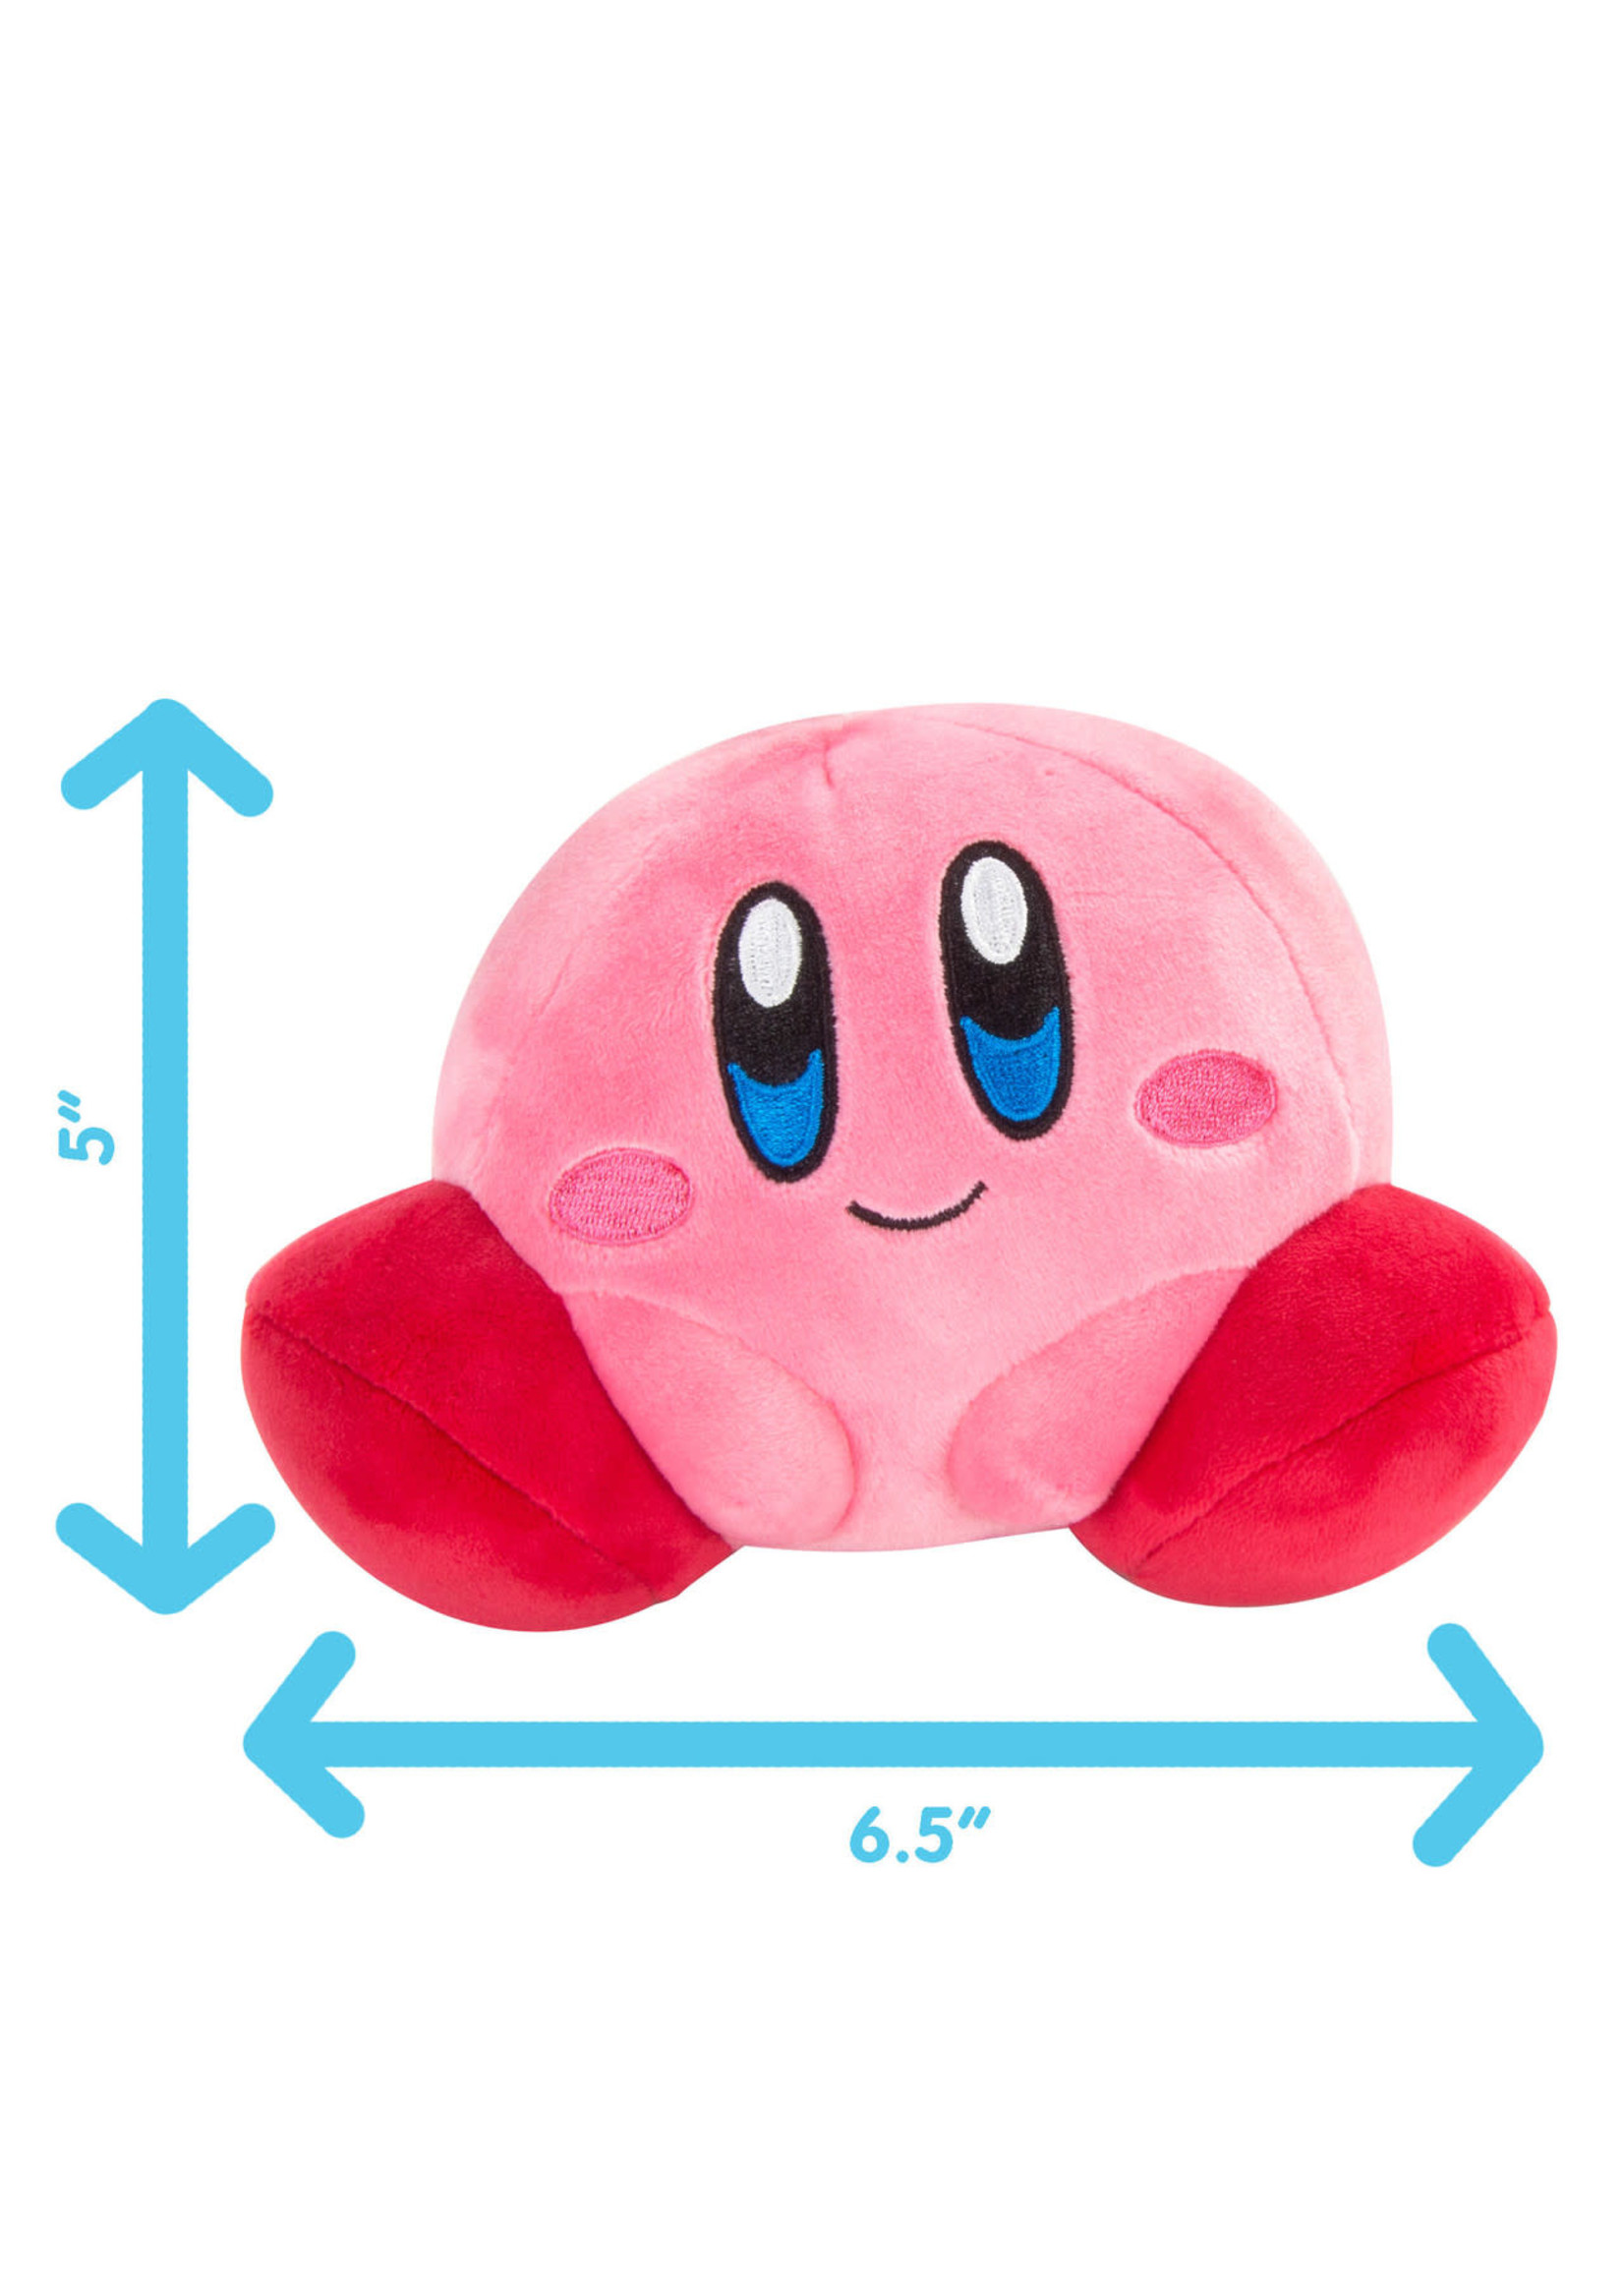 Club Mochi Mochi Kirby plush